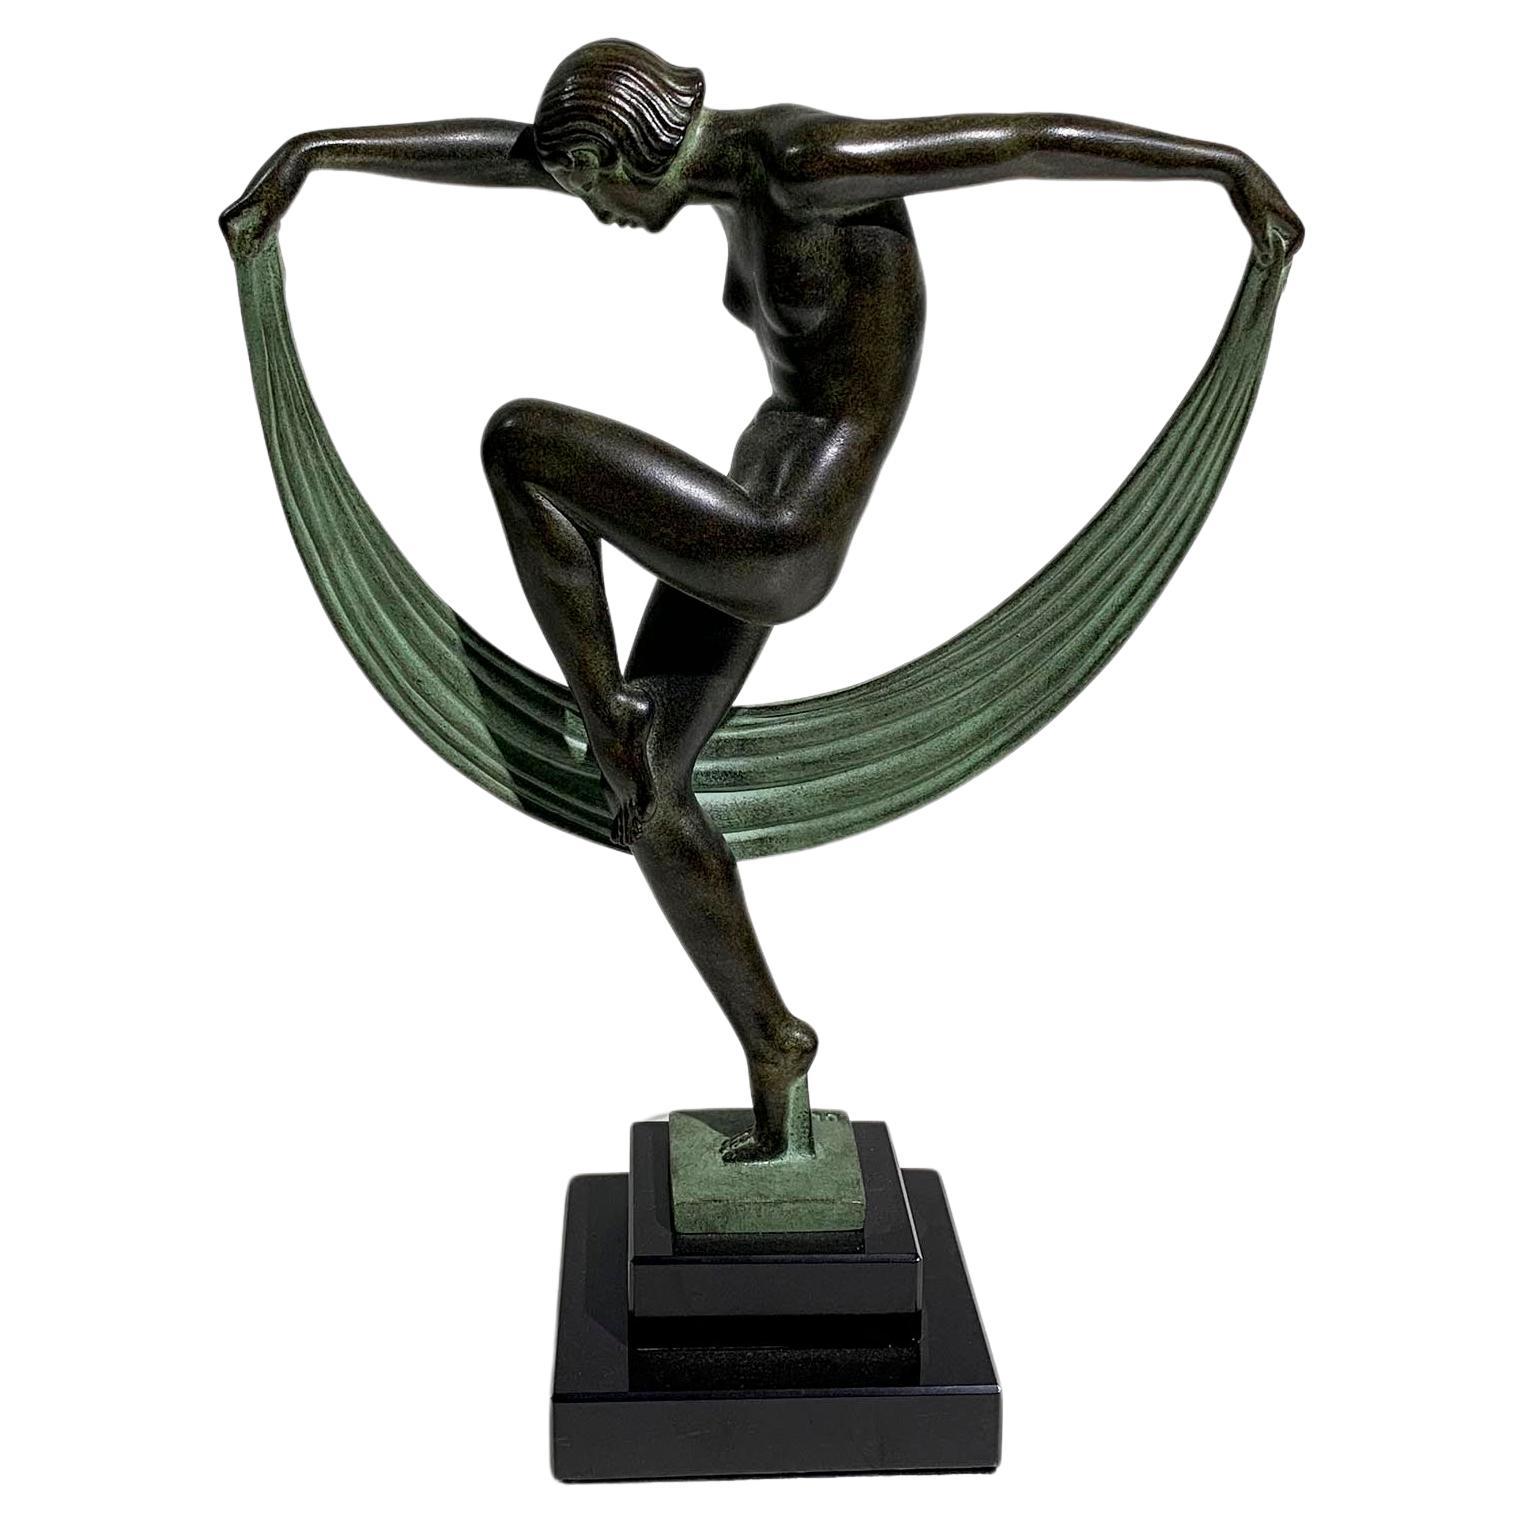 Art Deco "Folie" Dancer Sculpture by Denis for Max Le Verrier, Signed "Denis" For Sale